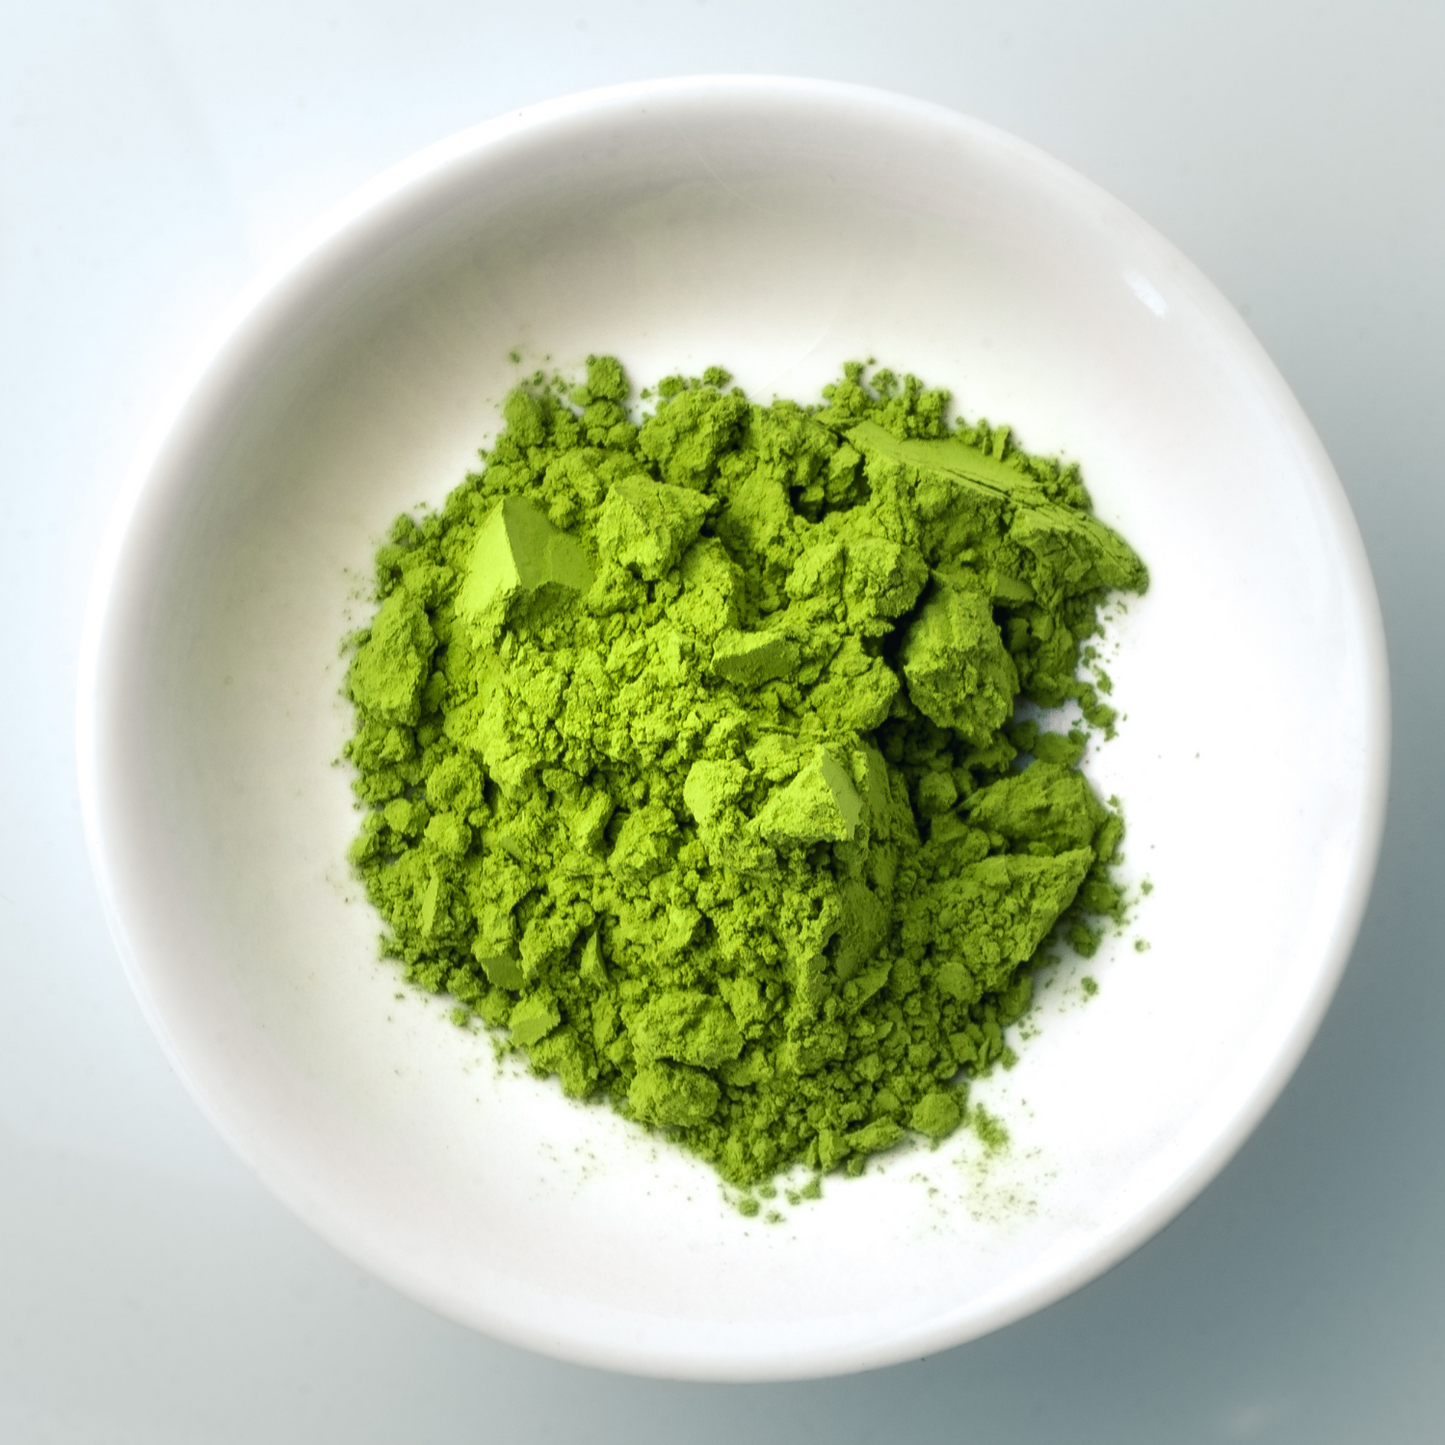 静岡抹茶 缶 30g Shizuoka Matcha (Green Tea Powder) Can 30g Bột Matcha cổ điển Classic 30 gram chính hãng 100% được trồng và chế biến tại tỉnh Shizuoka, Nhật Bản 